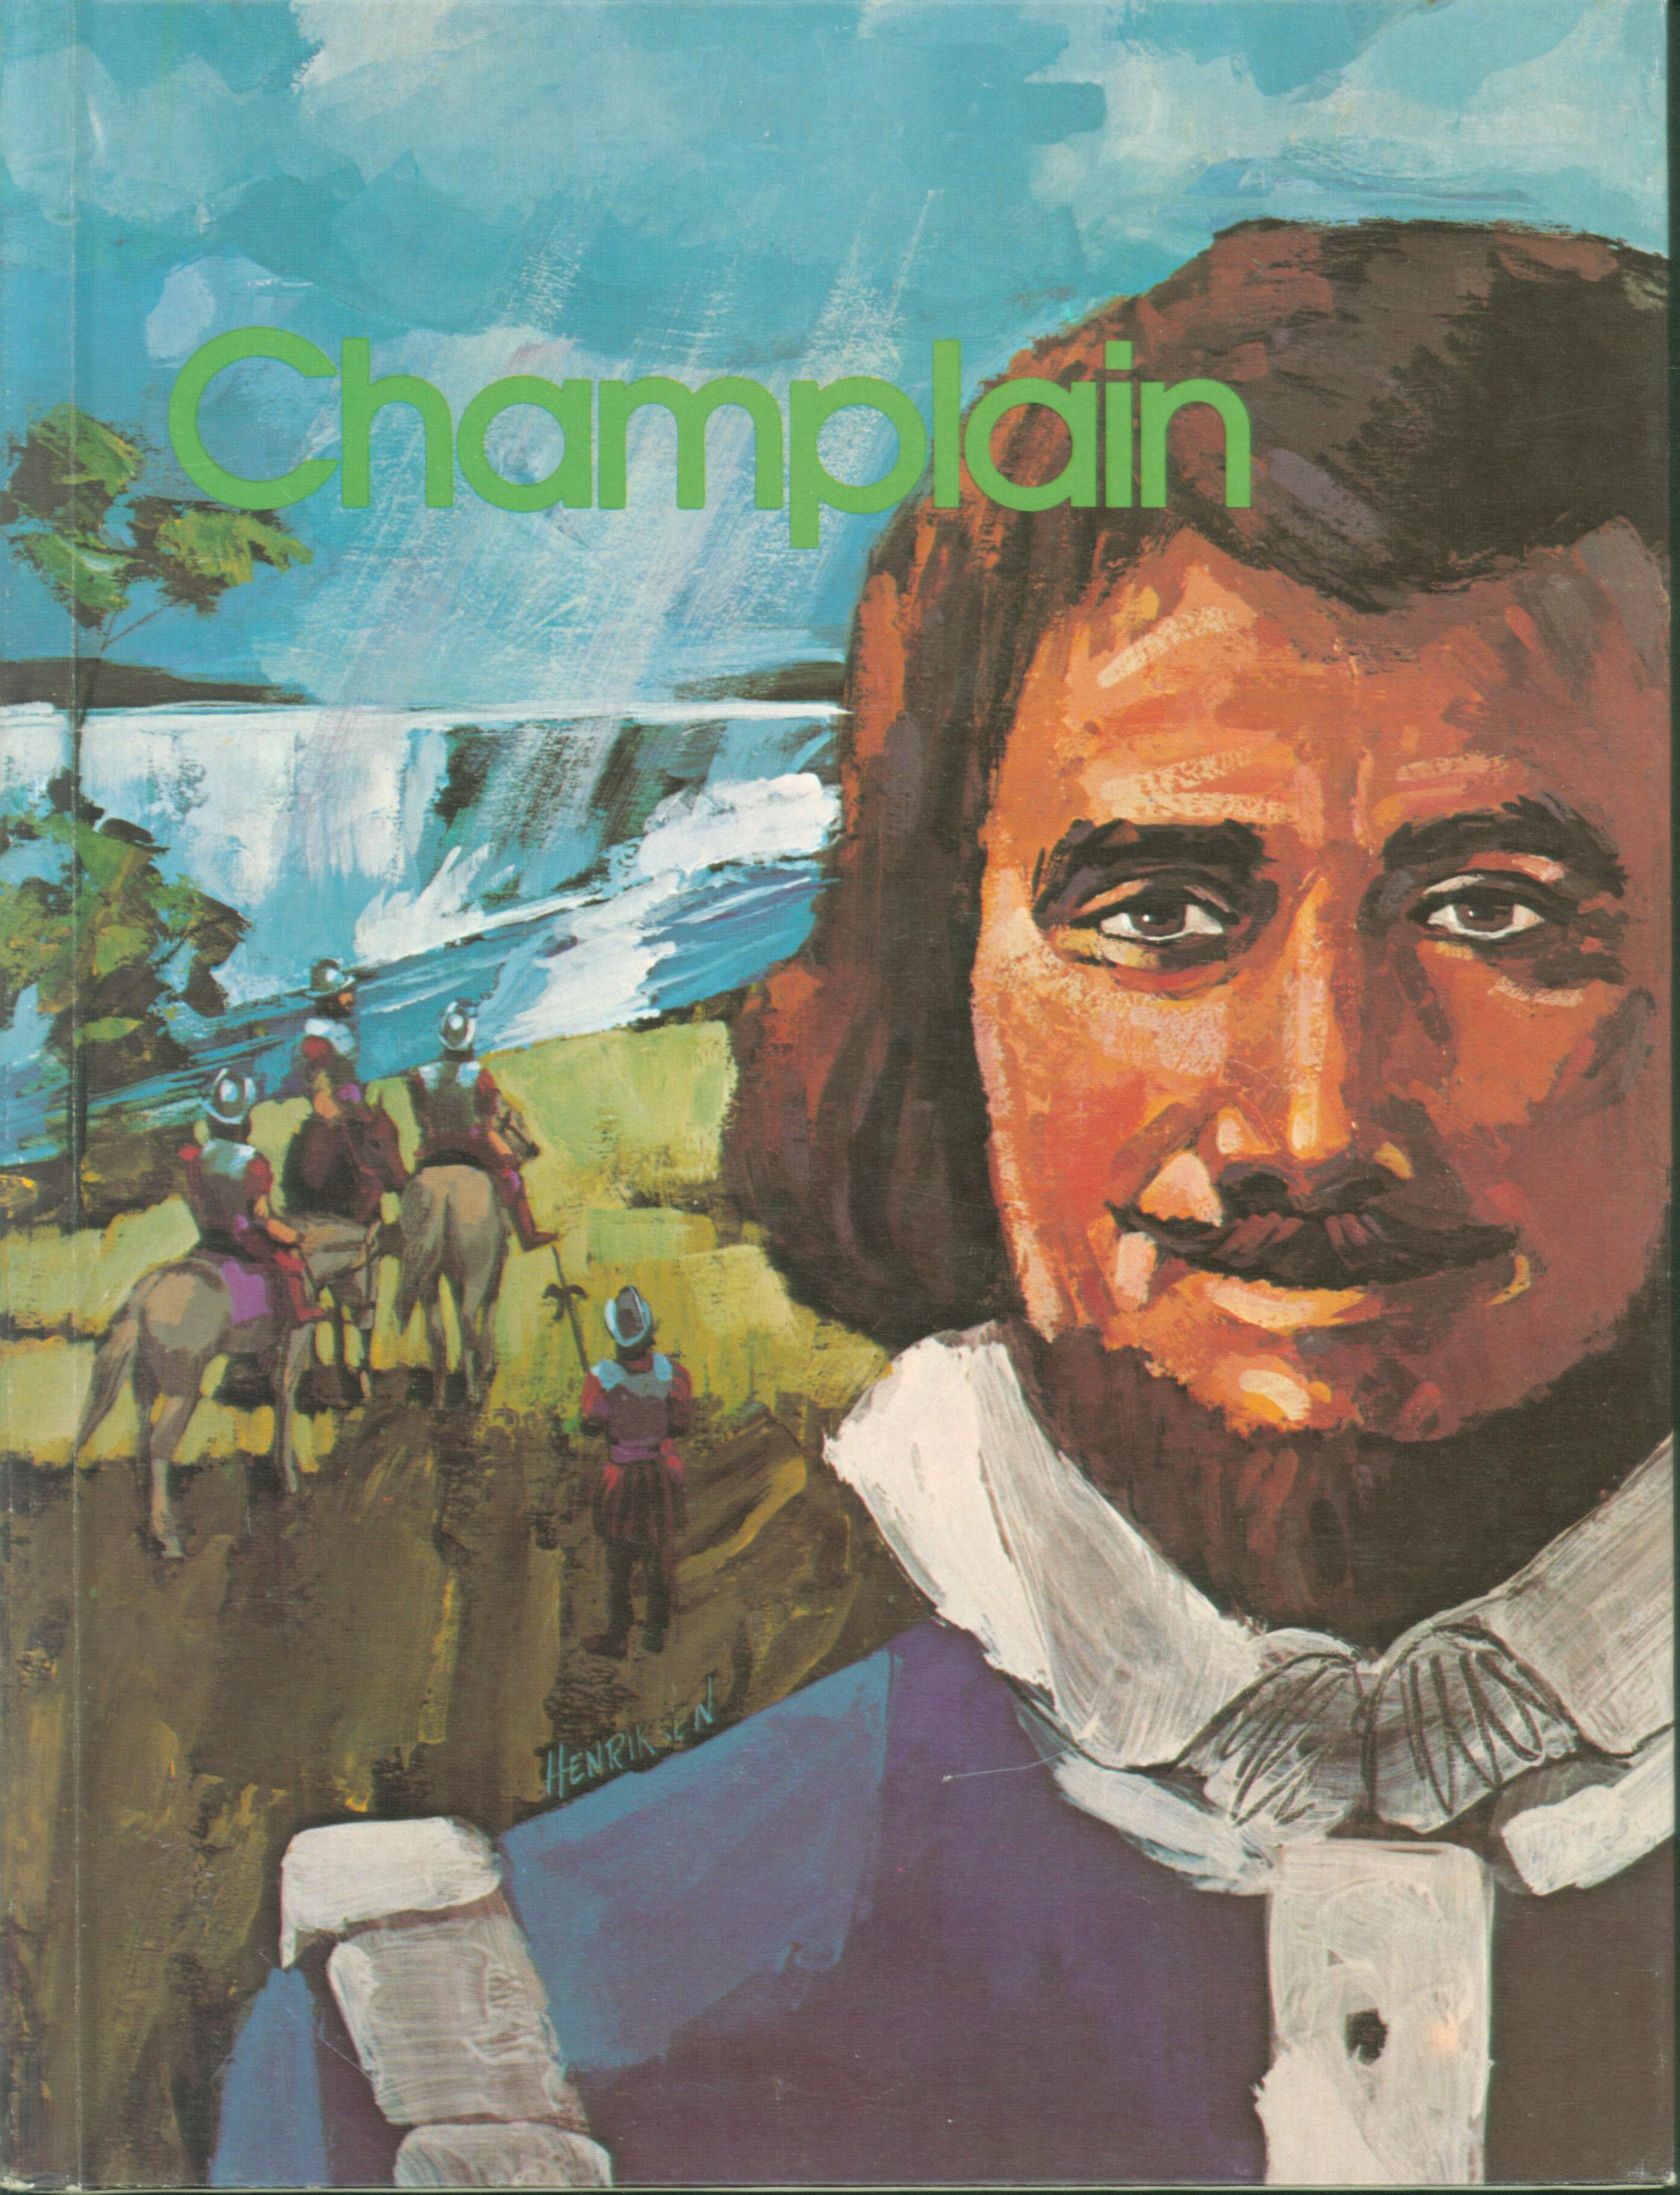 CHAMPLAIN: explorer of New France. 